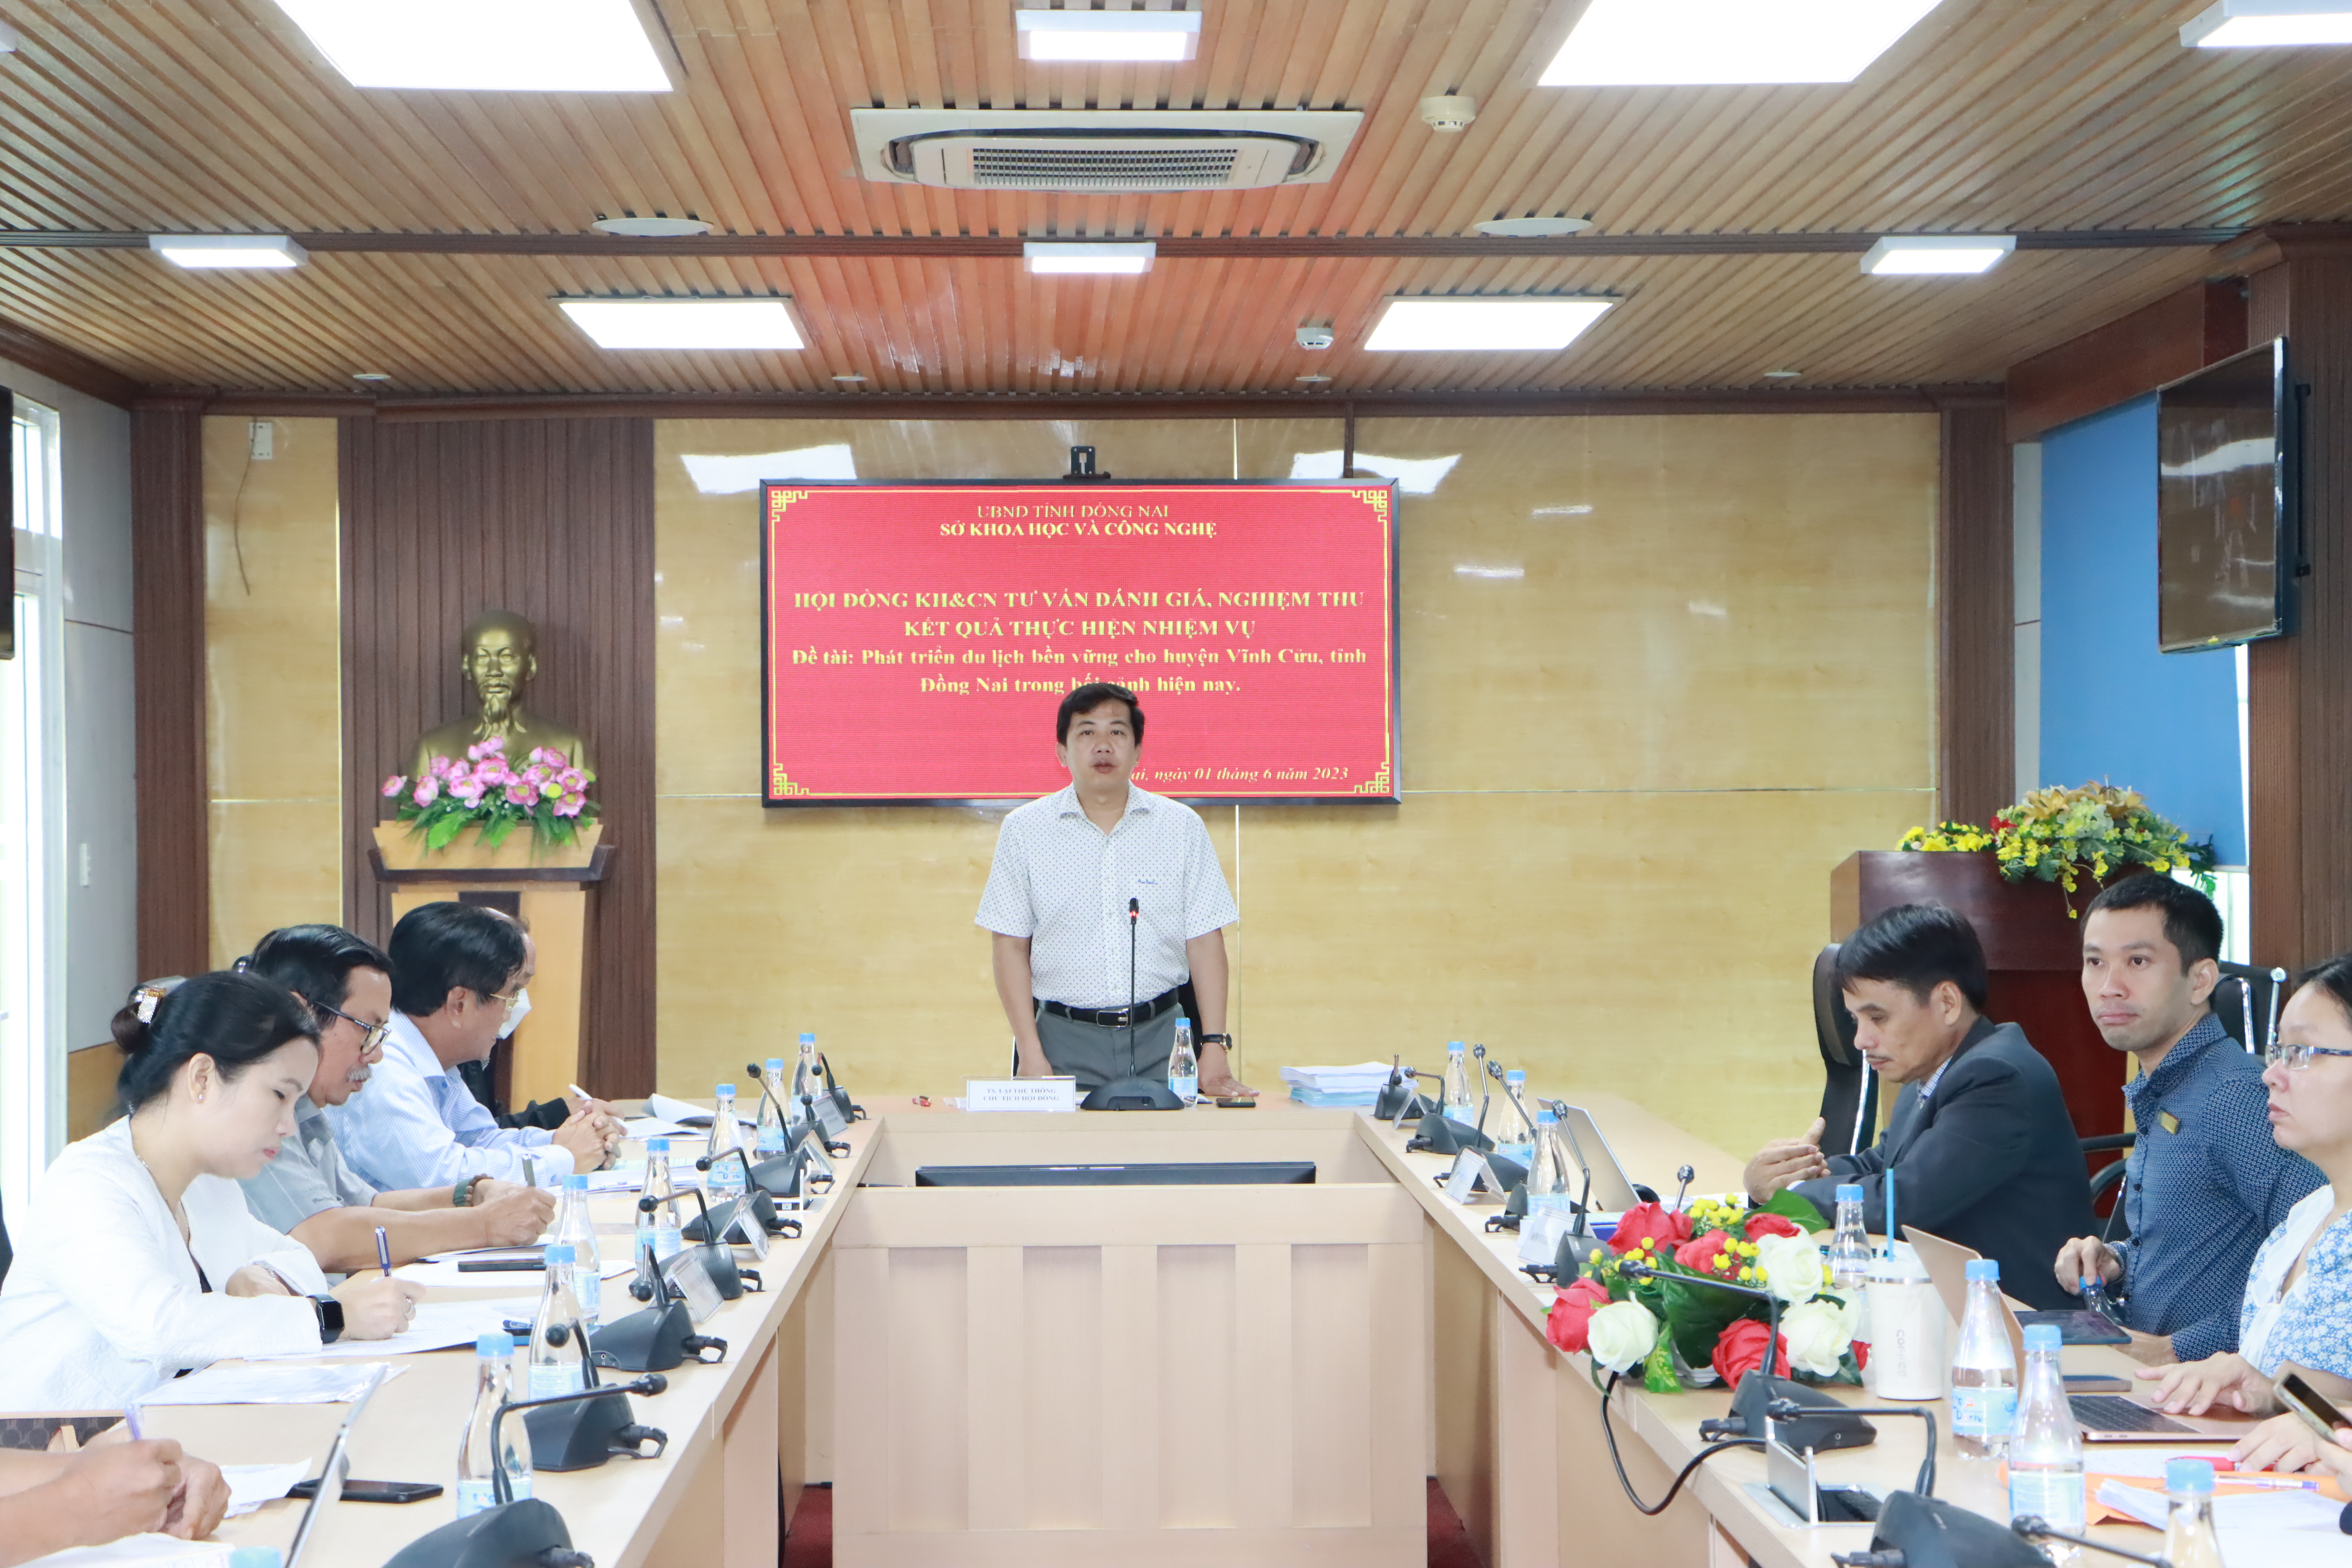 Đề xuất các giải pháp phát triển du lịch bền vững cho huyện Vĩnh Cửu